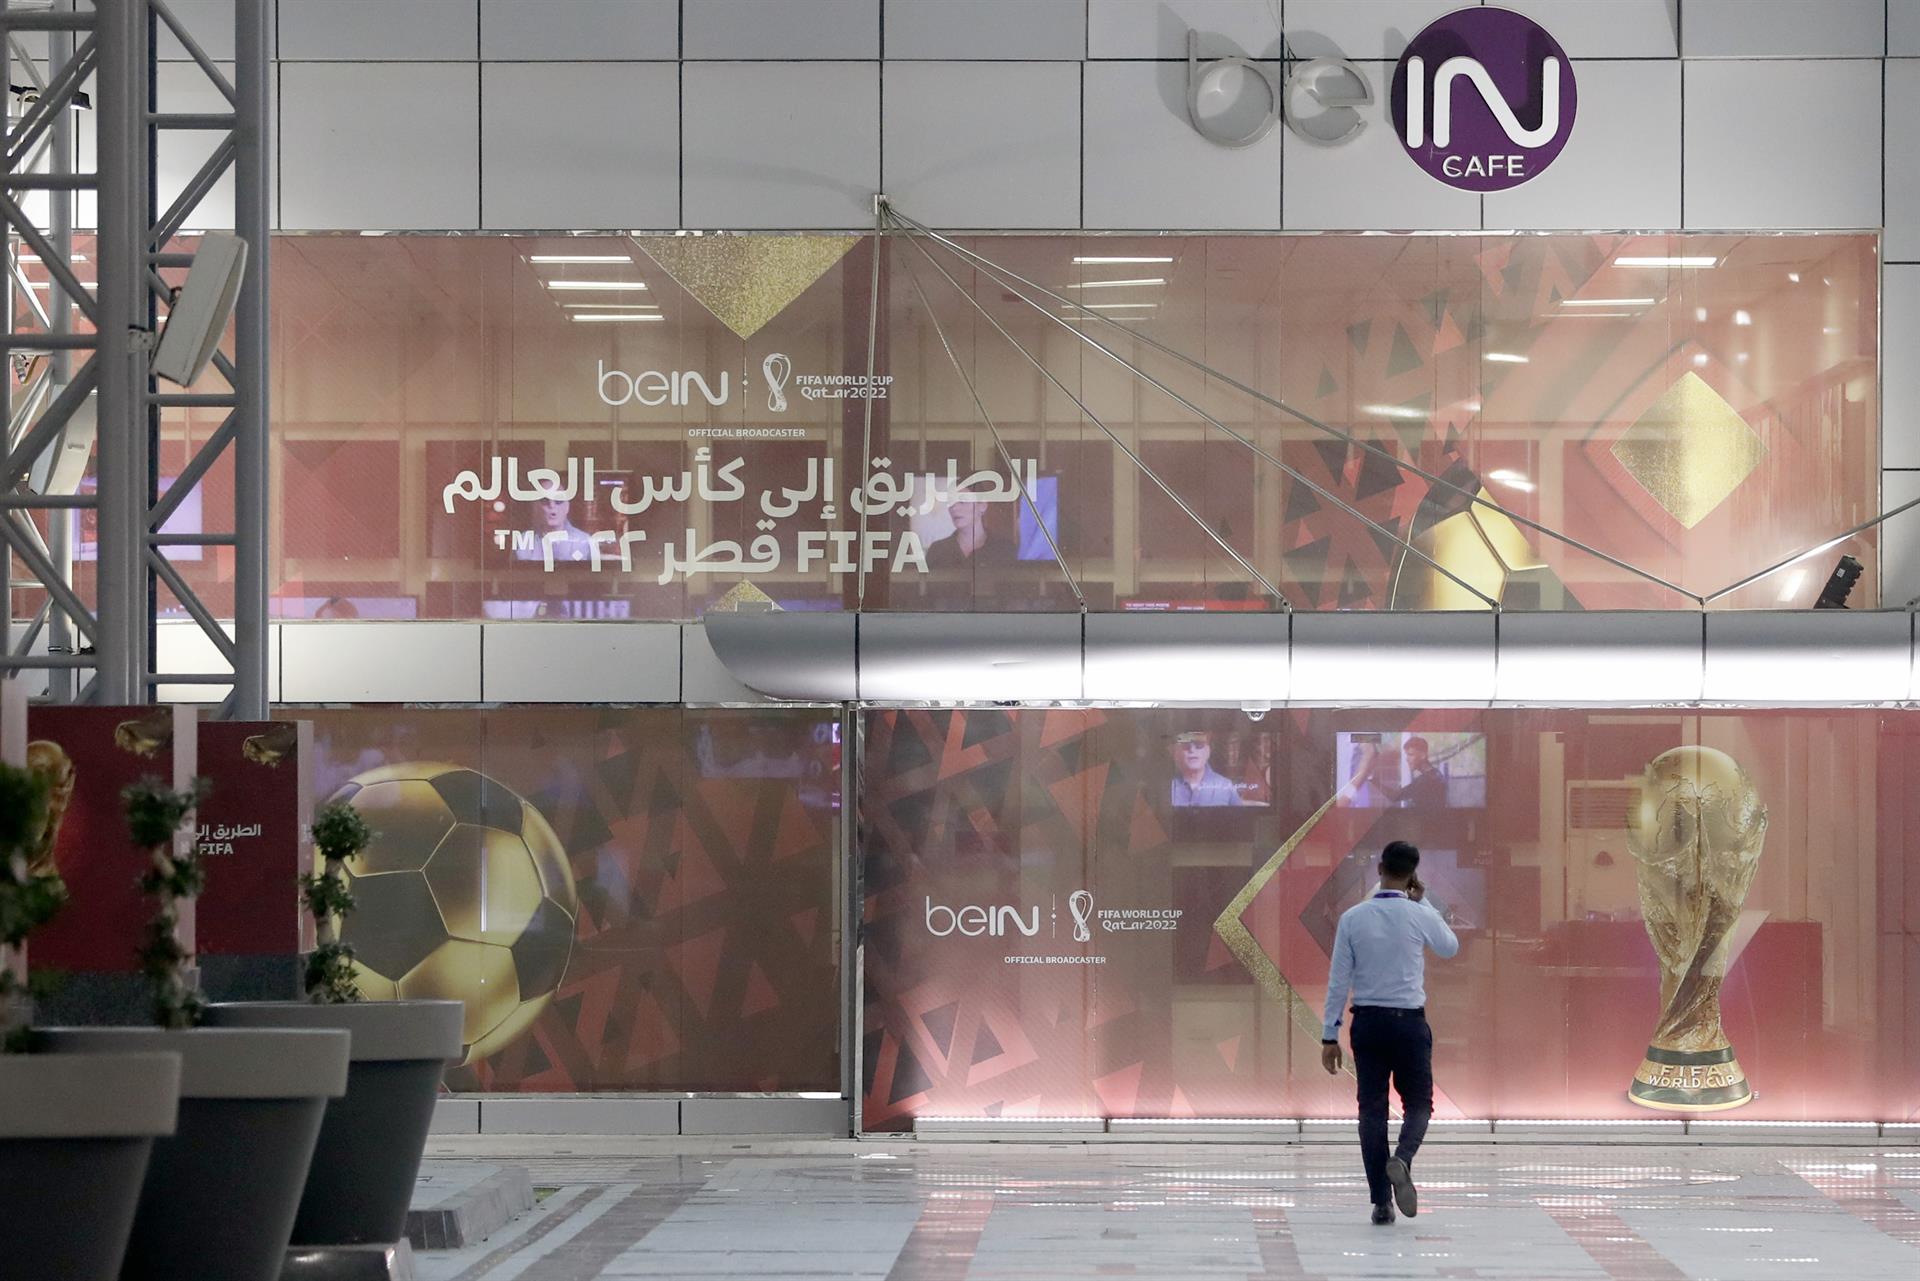 Vista de las instalaciones del grupo beIN, canal oficial del Mundial de Qatar 2022